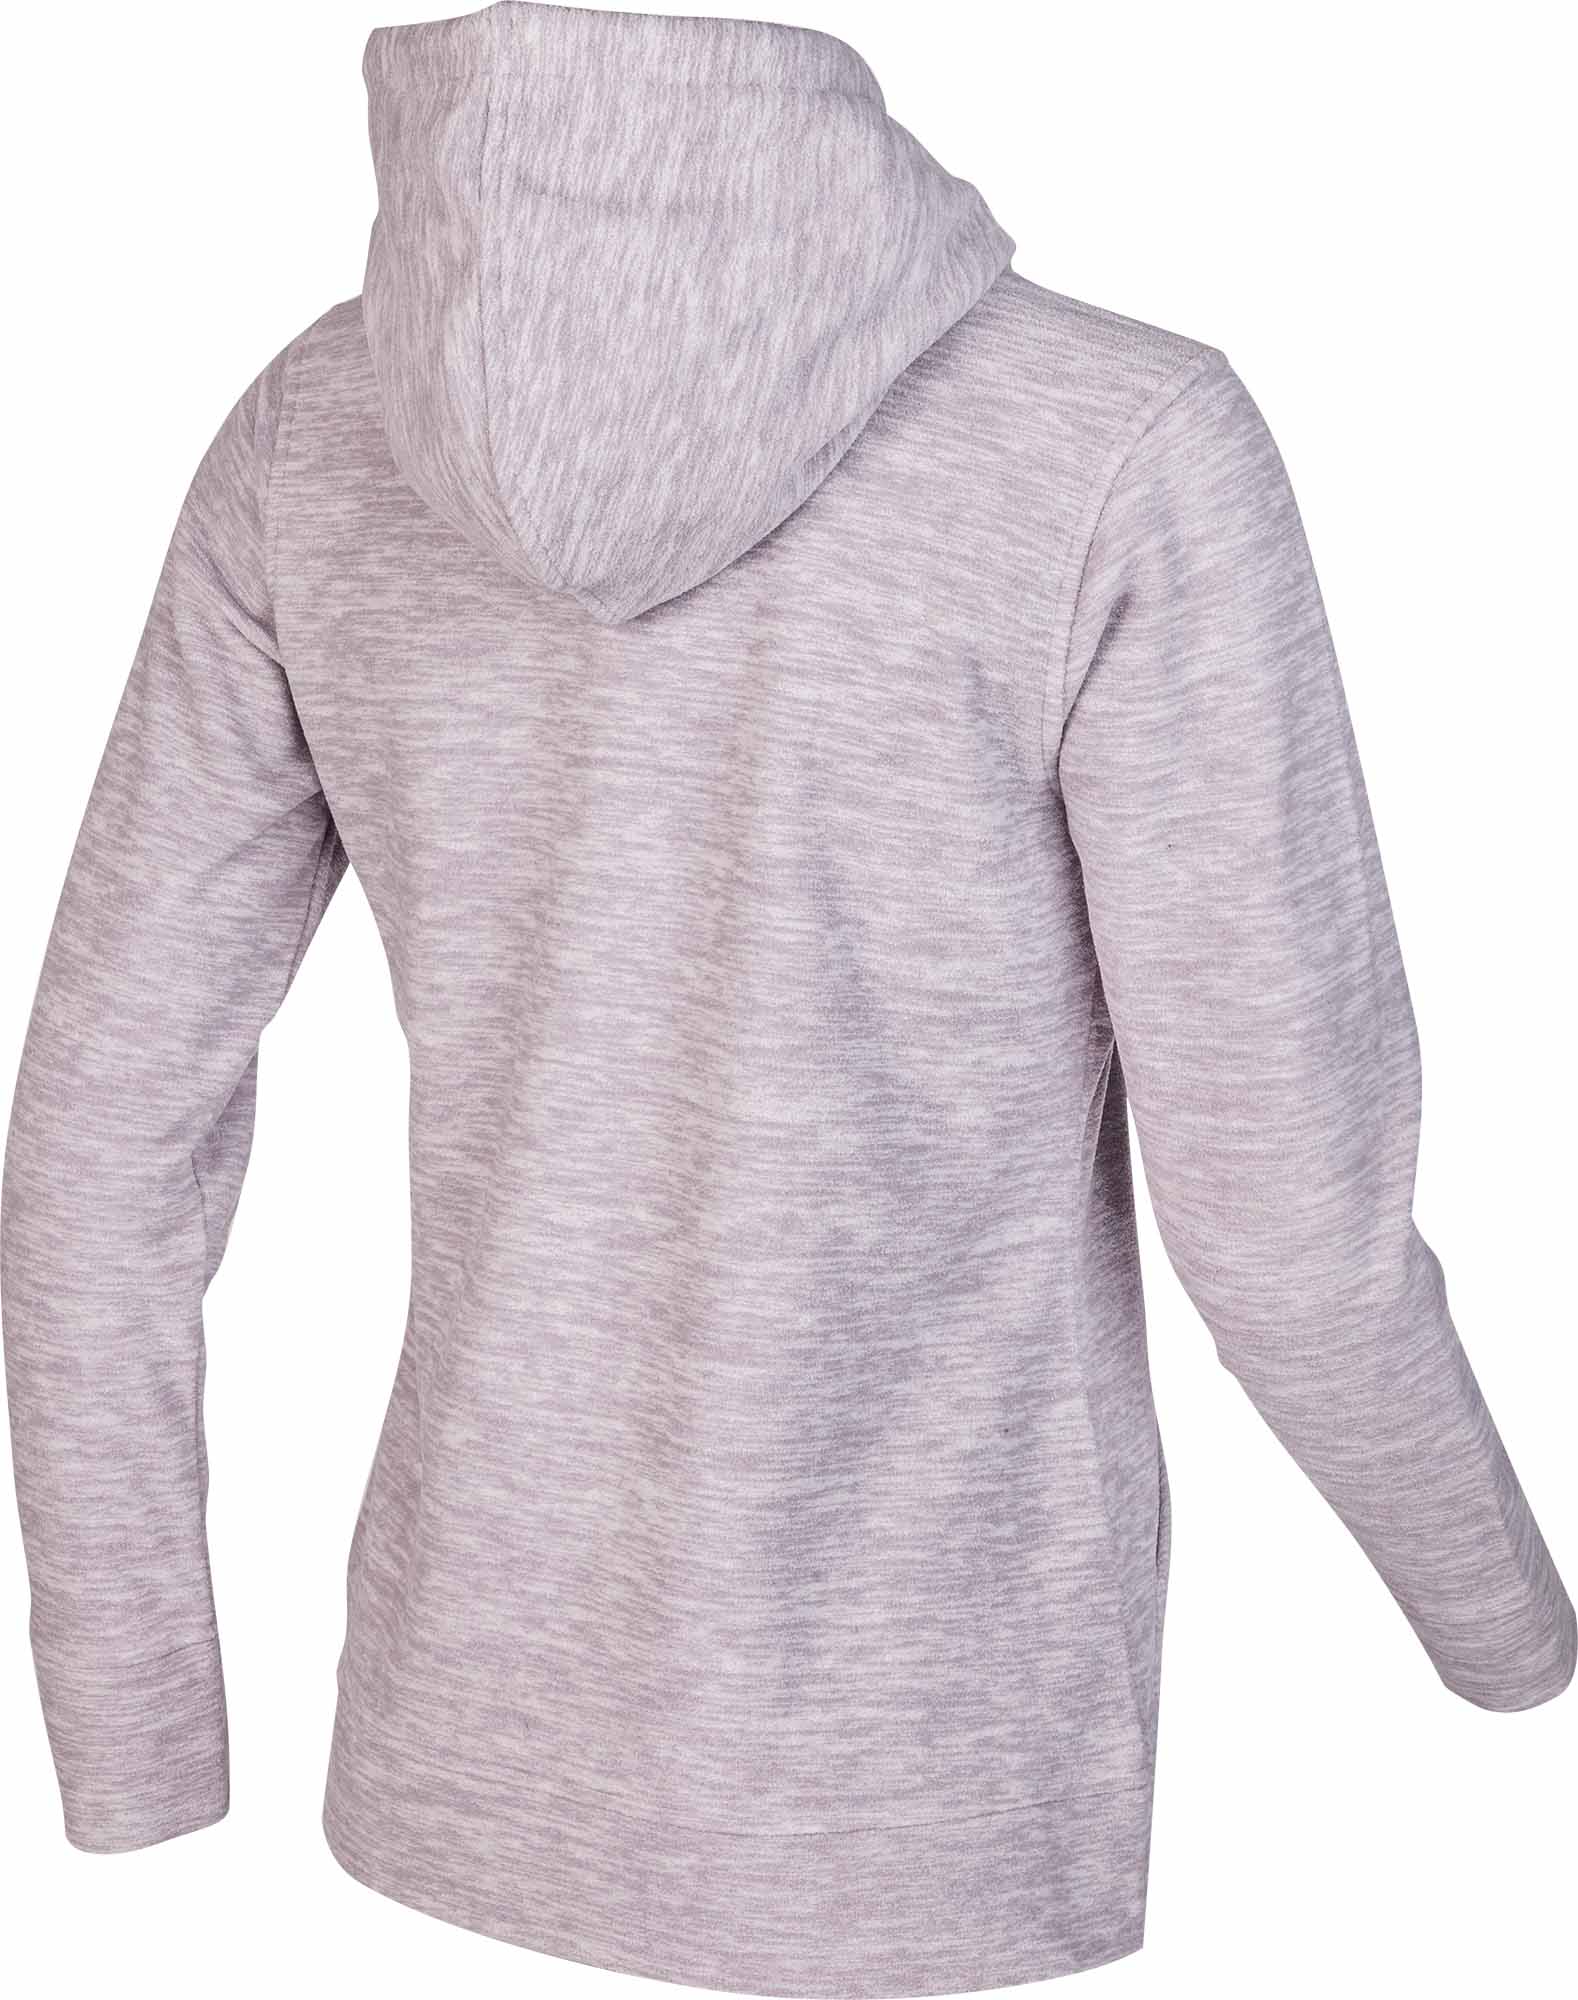 Women's fleece sweatshirt